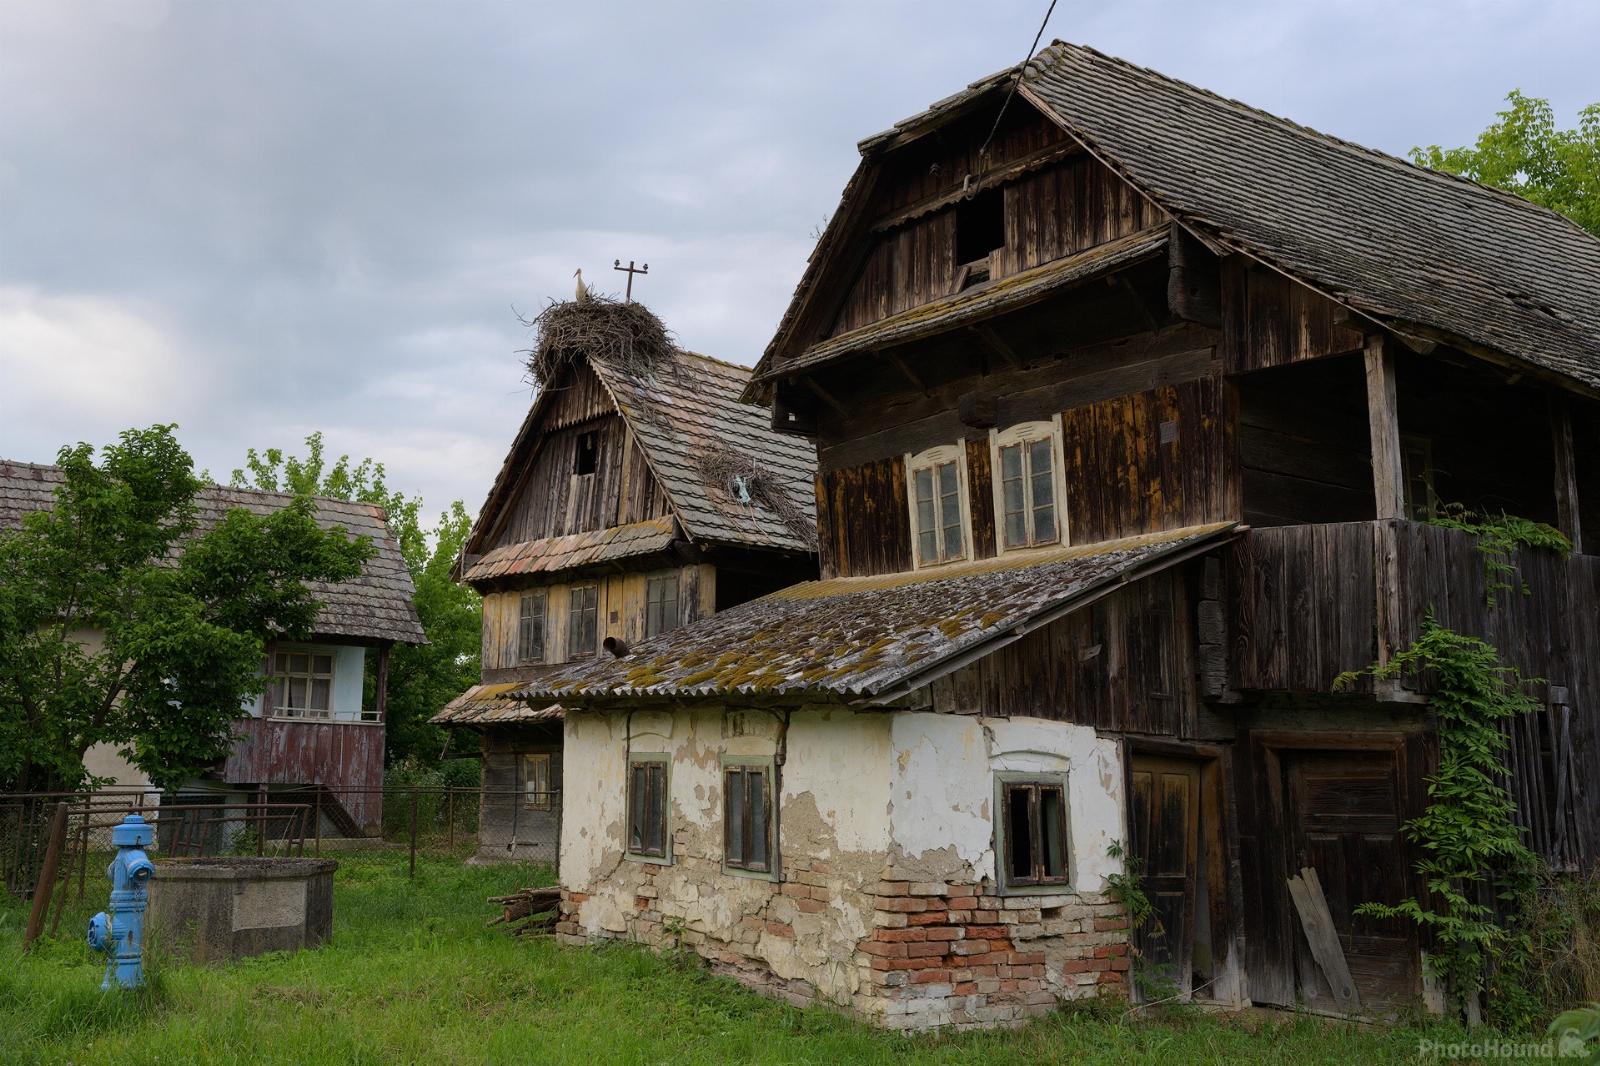 Image of Čigoč Village by Luka Esenko